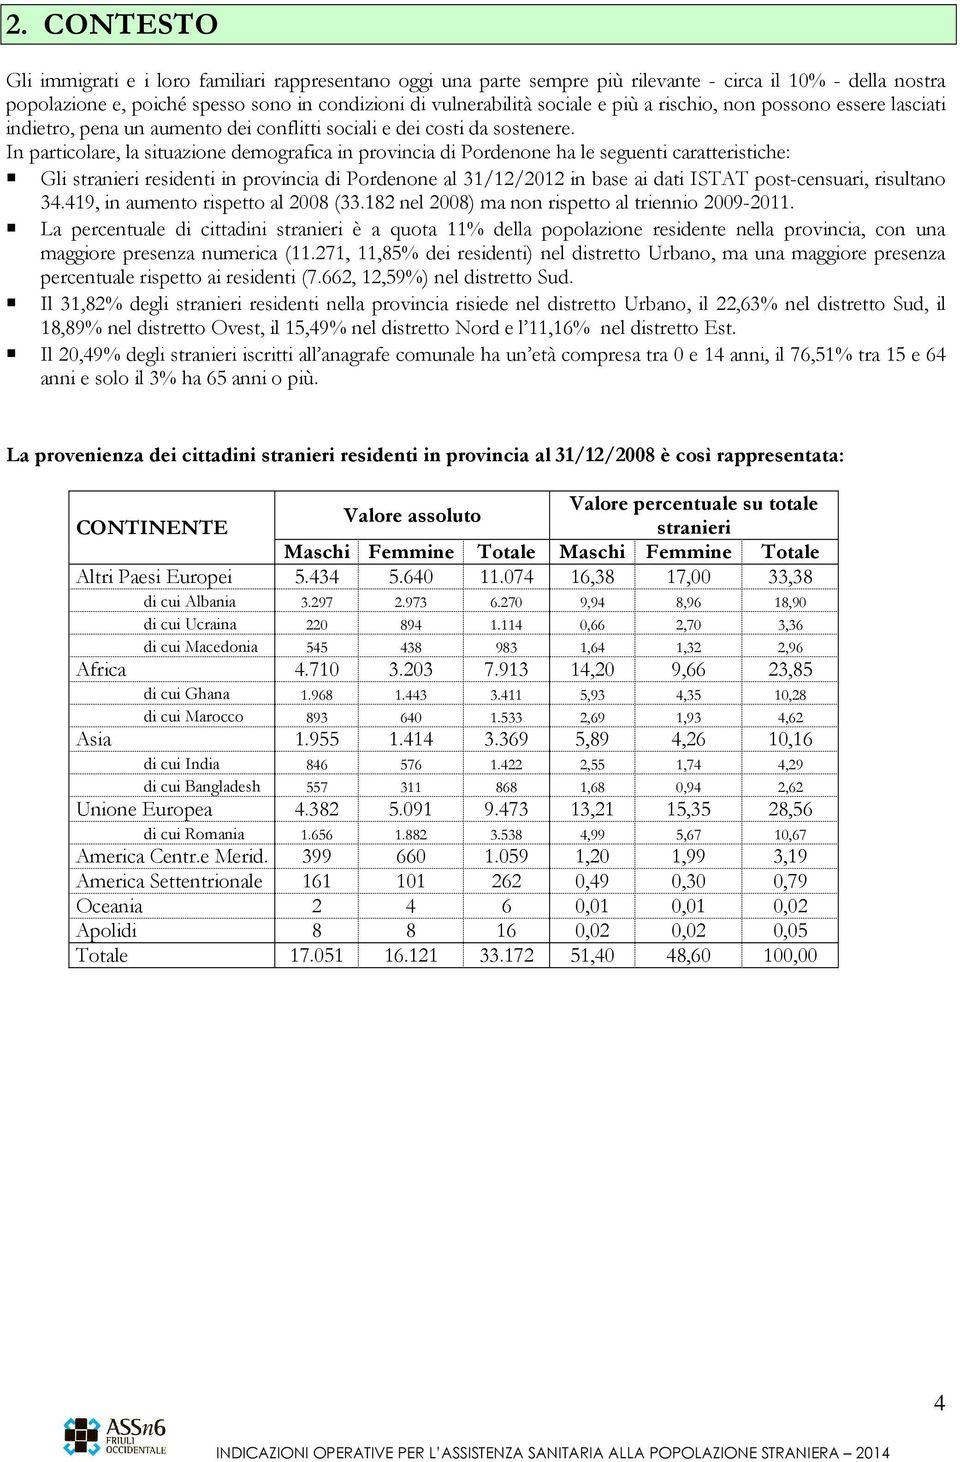 In particolare, la situazione demografica in provincia di Pordenone ha le seguenti caratteristiche: Gli stranieri residenti in provincia di Pordenone al 31/12/2012 in base ai dati ISTAT